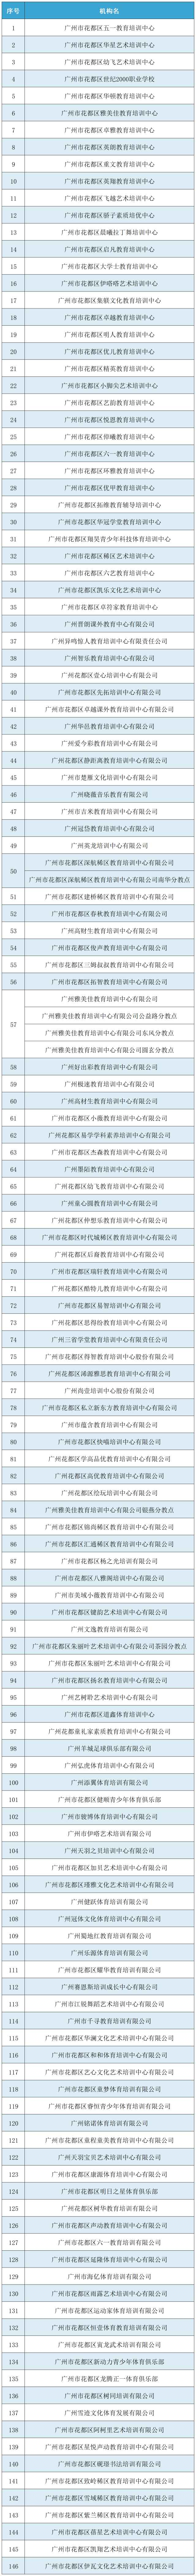 广州市第二批证照齐全的校外培训机构名单。